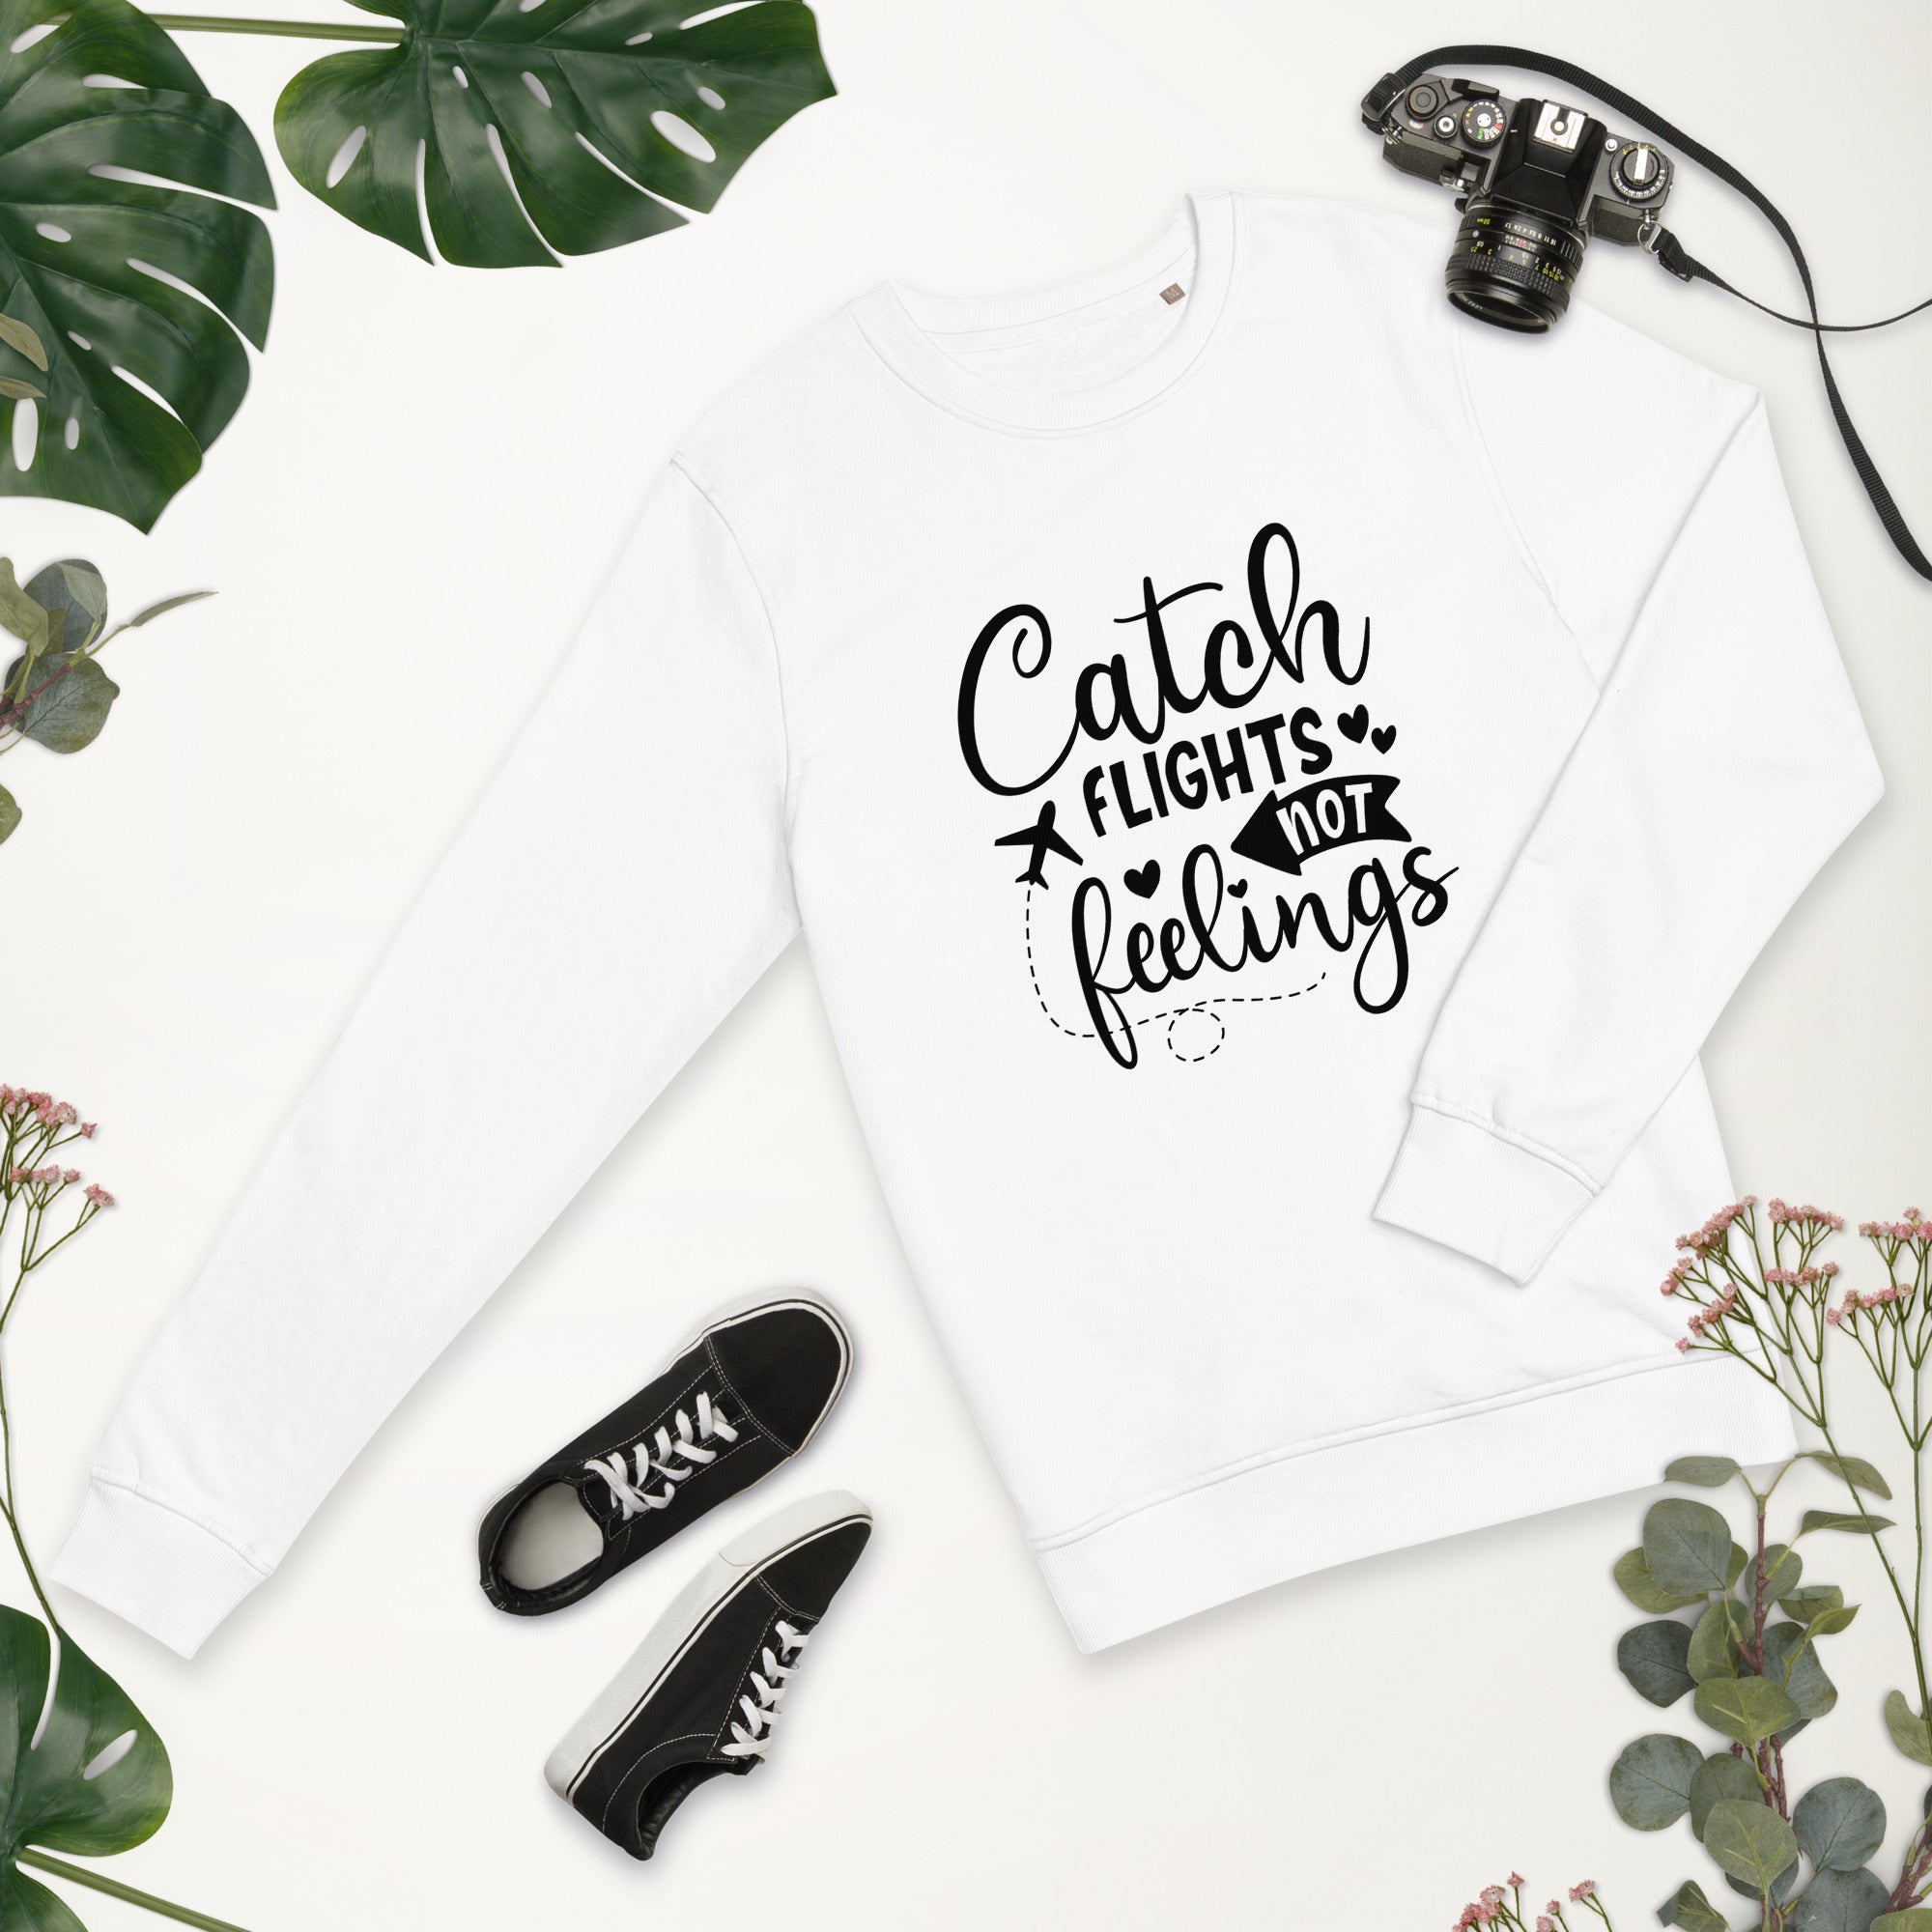 Catch Flights not Feelings - Sweatshirt